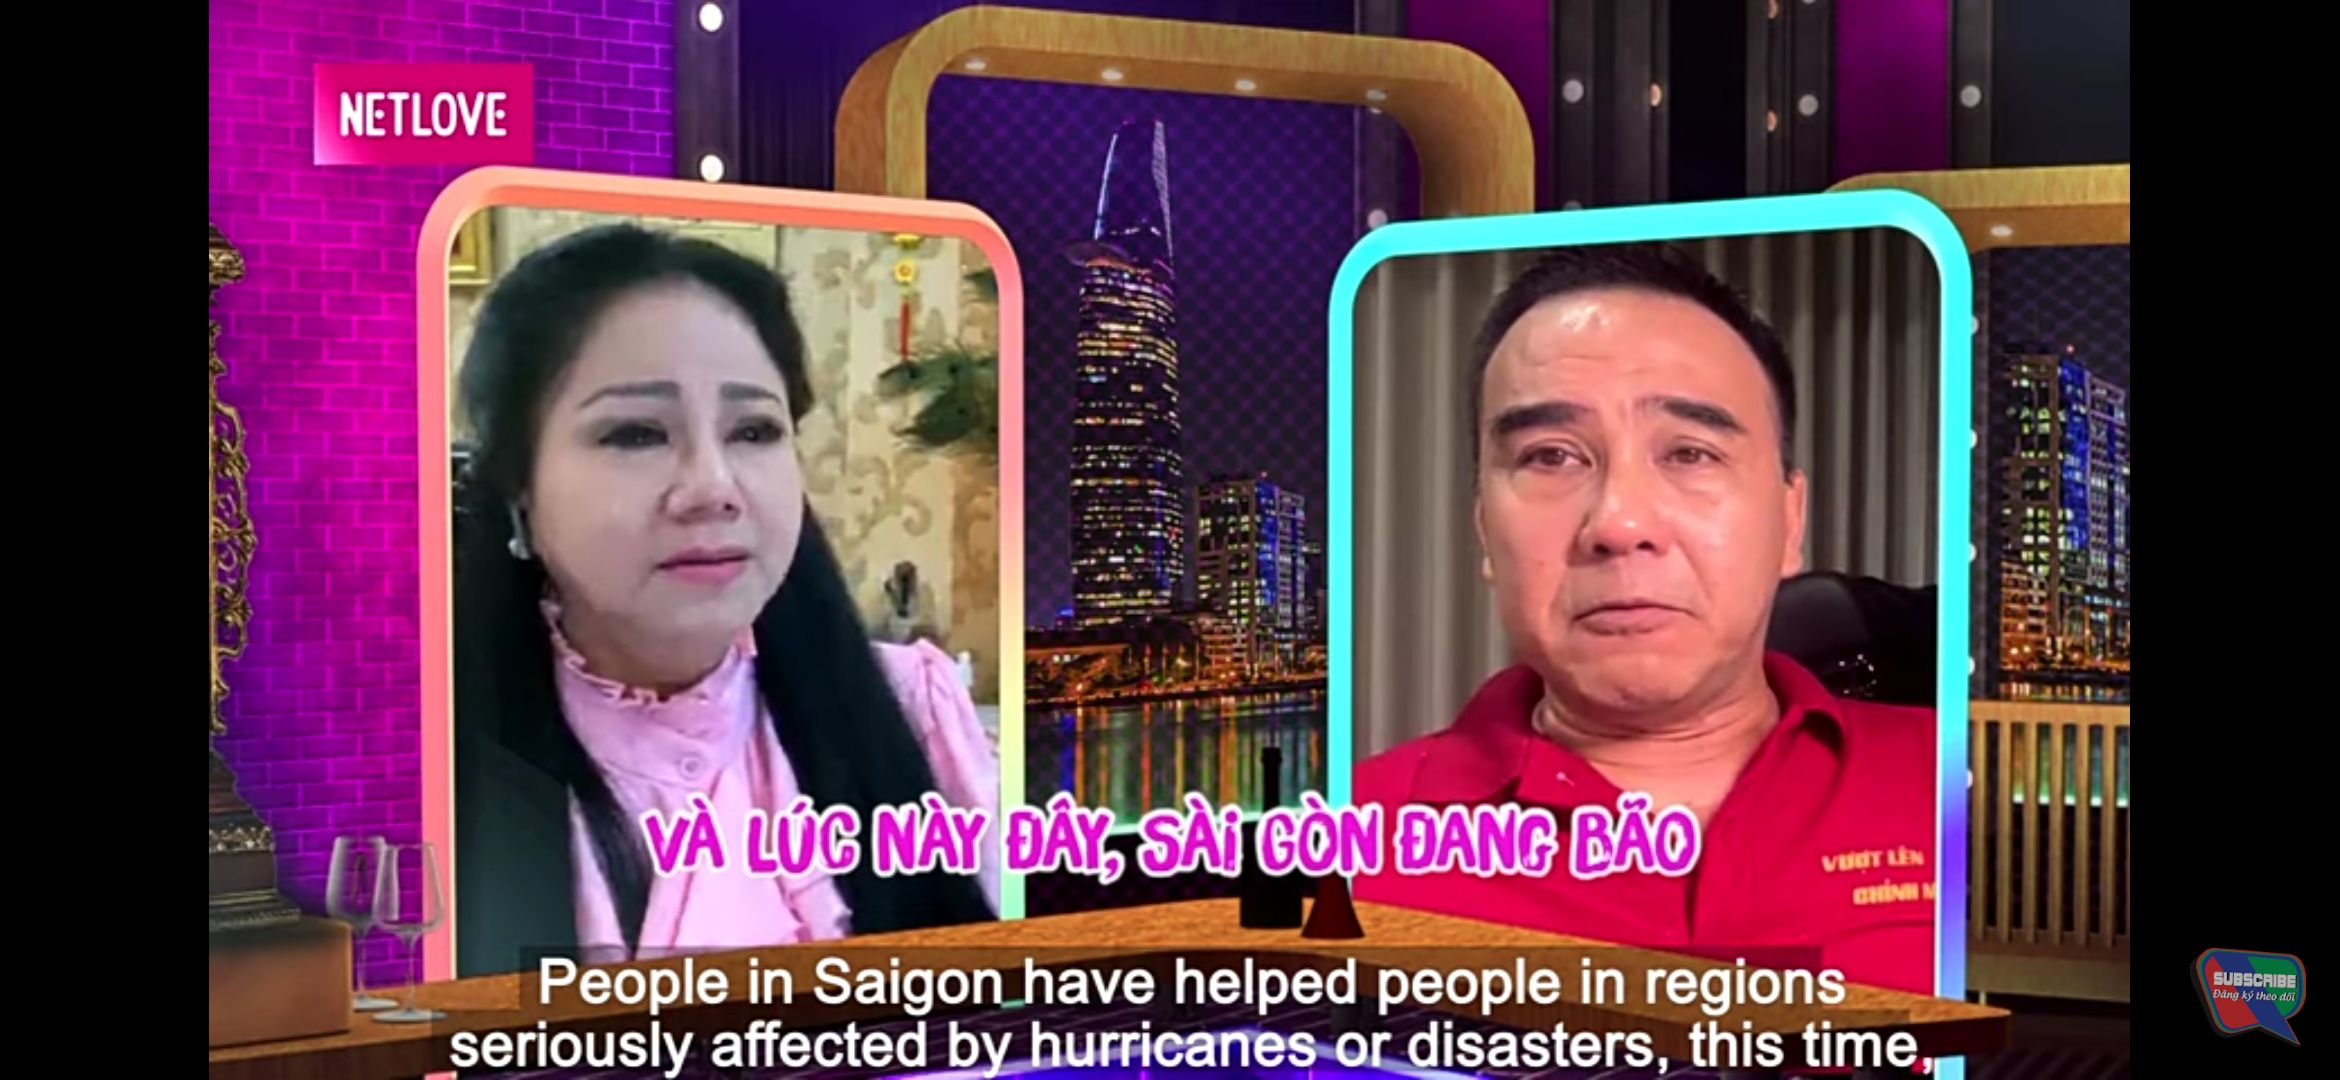 Ngọc Ánh và Quyền Linh xúc động khi nhắc về những khó khăn lúc dịch bệnh của người dân Sài Gòn